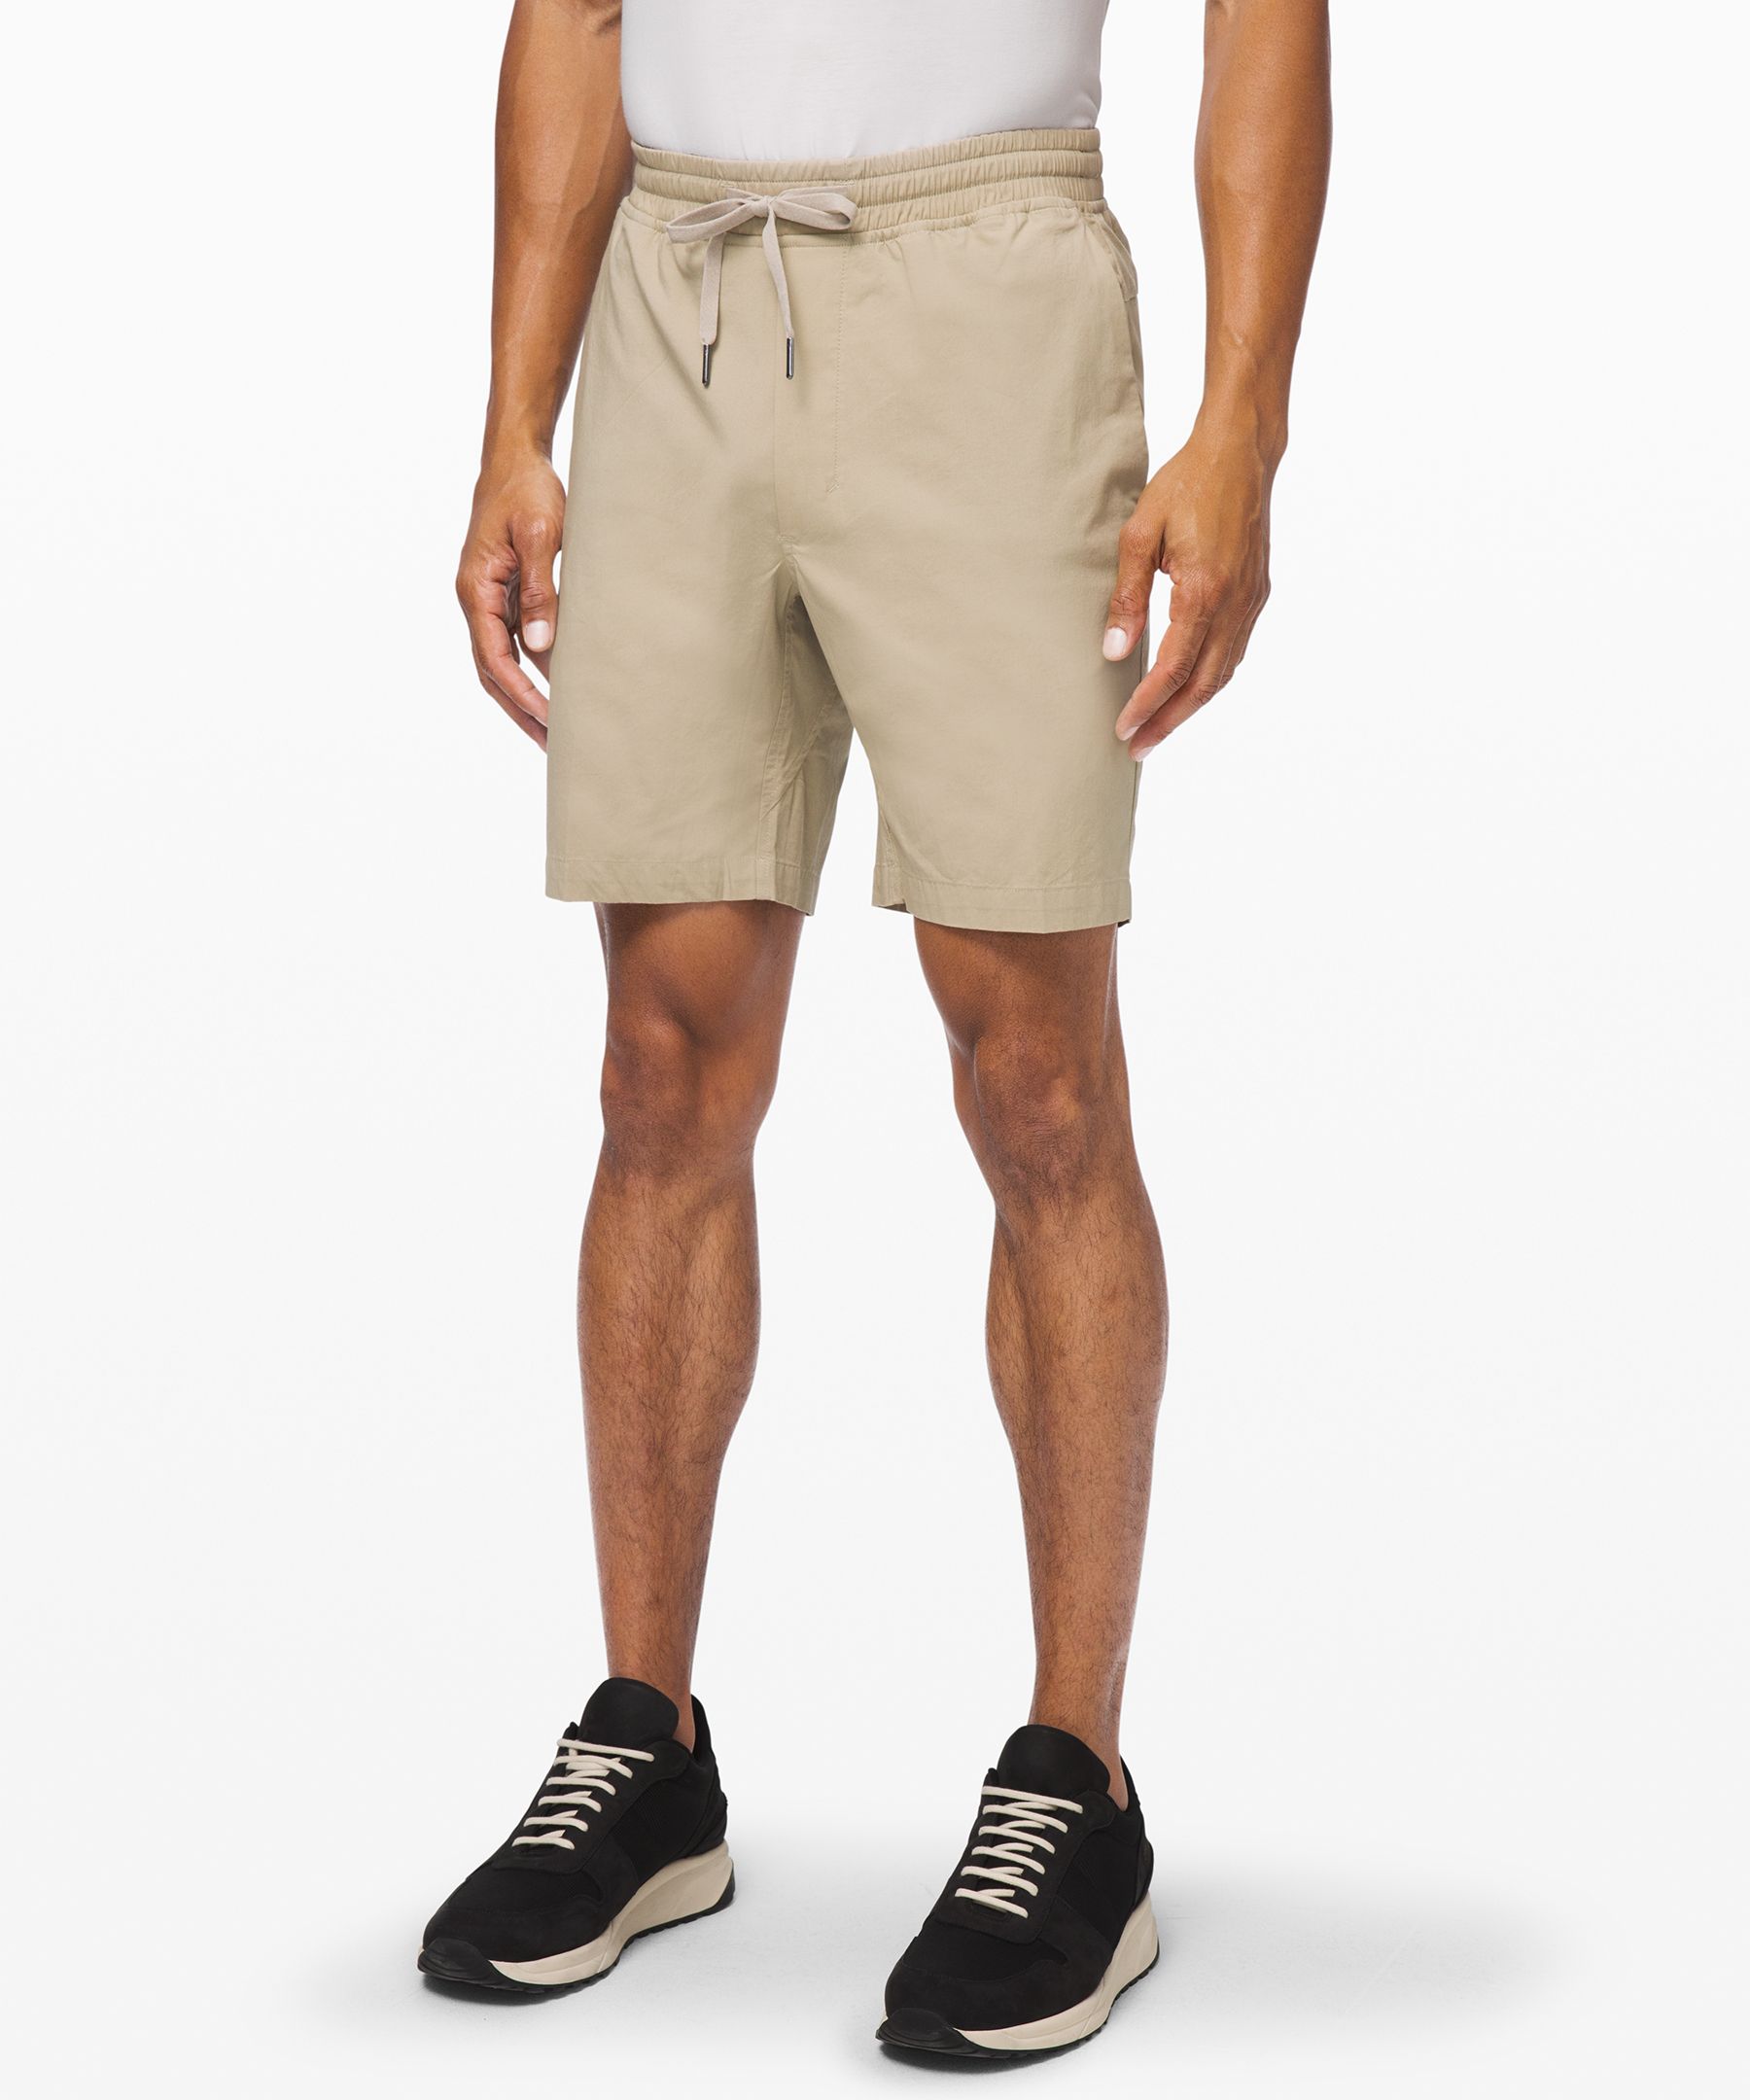 lululemon casual shorts